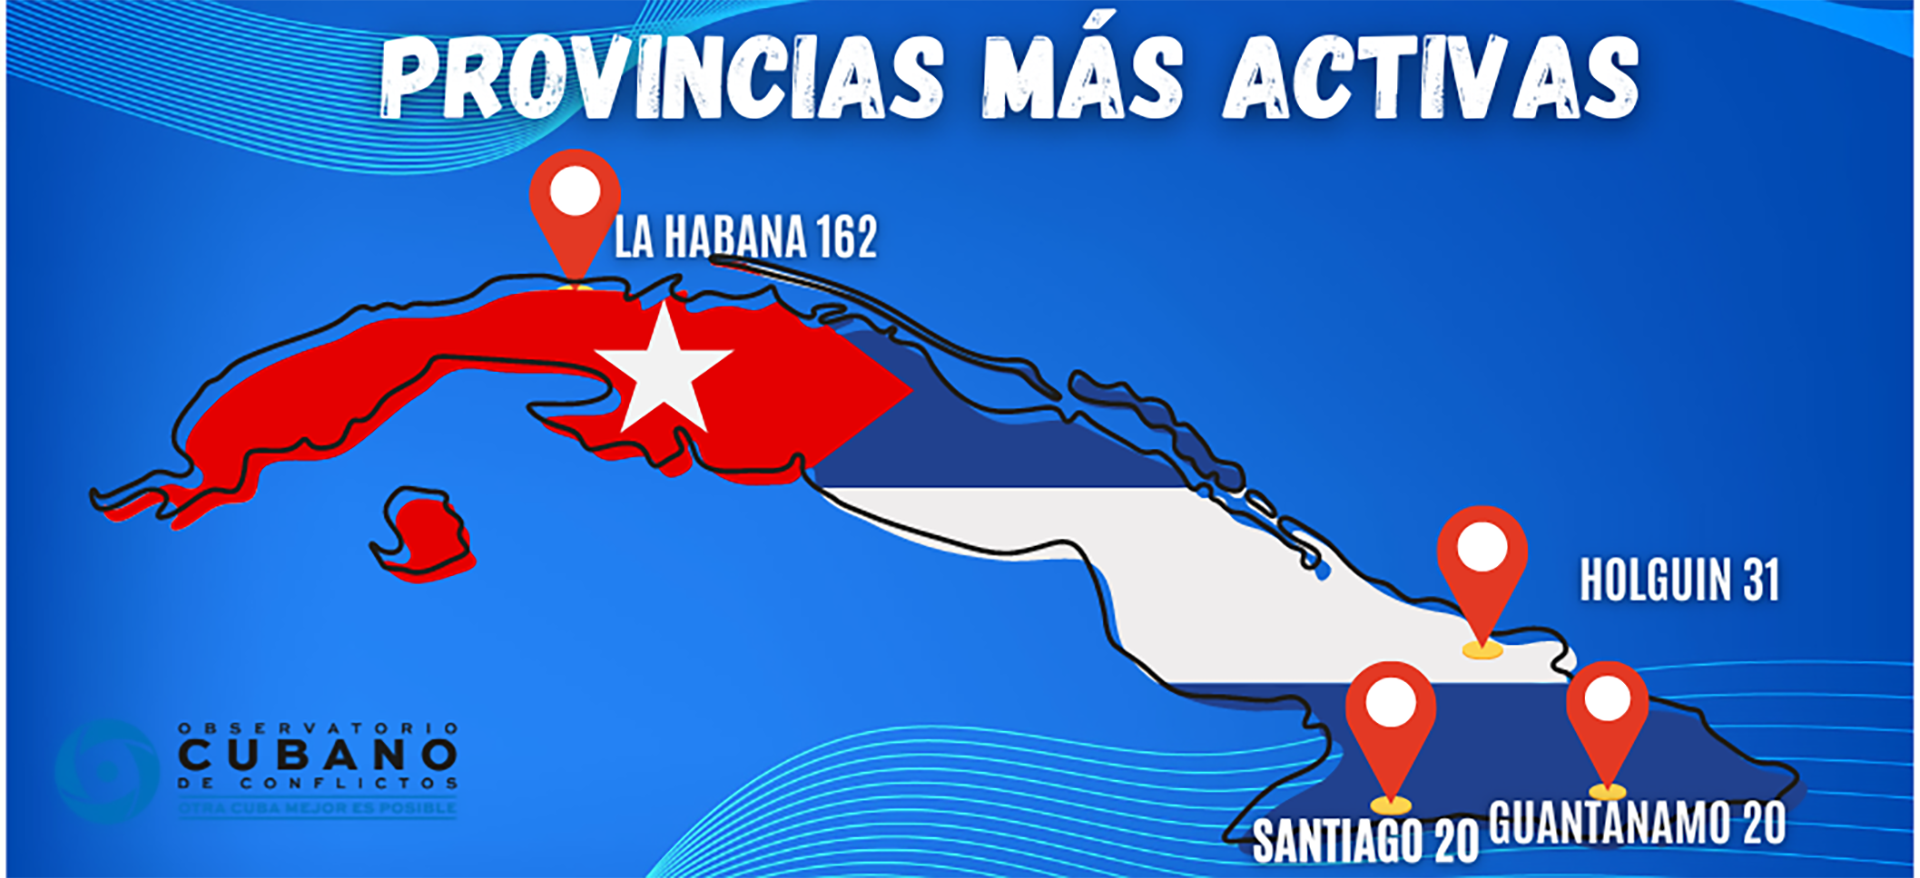 Las provincias más activas en las protestas (Observatorio Cubano de Conflictos)